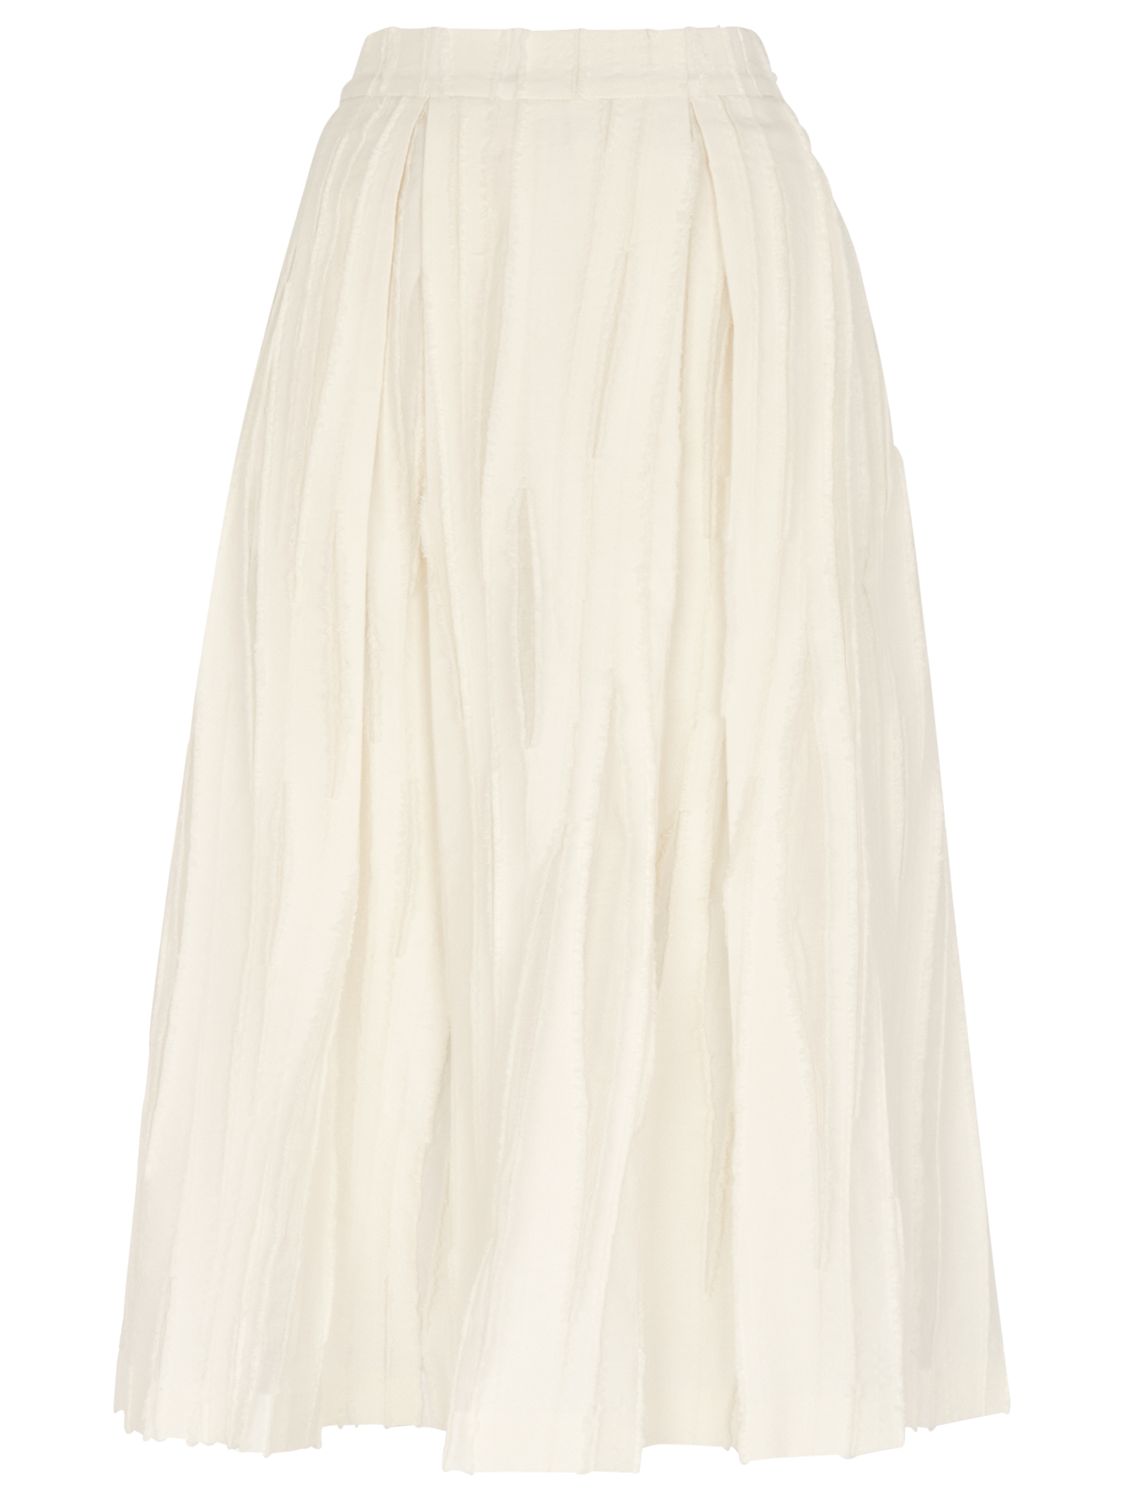 Whistles Textured Full Skirt, Ivory